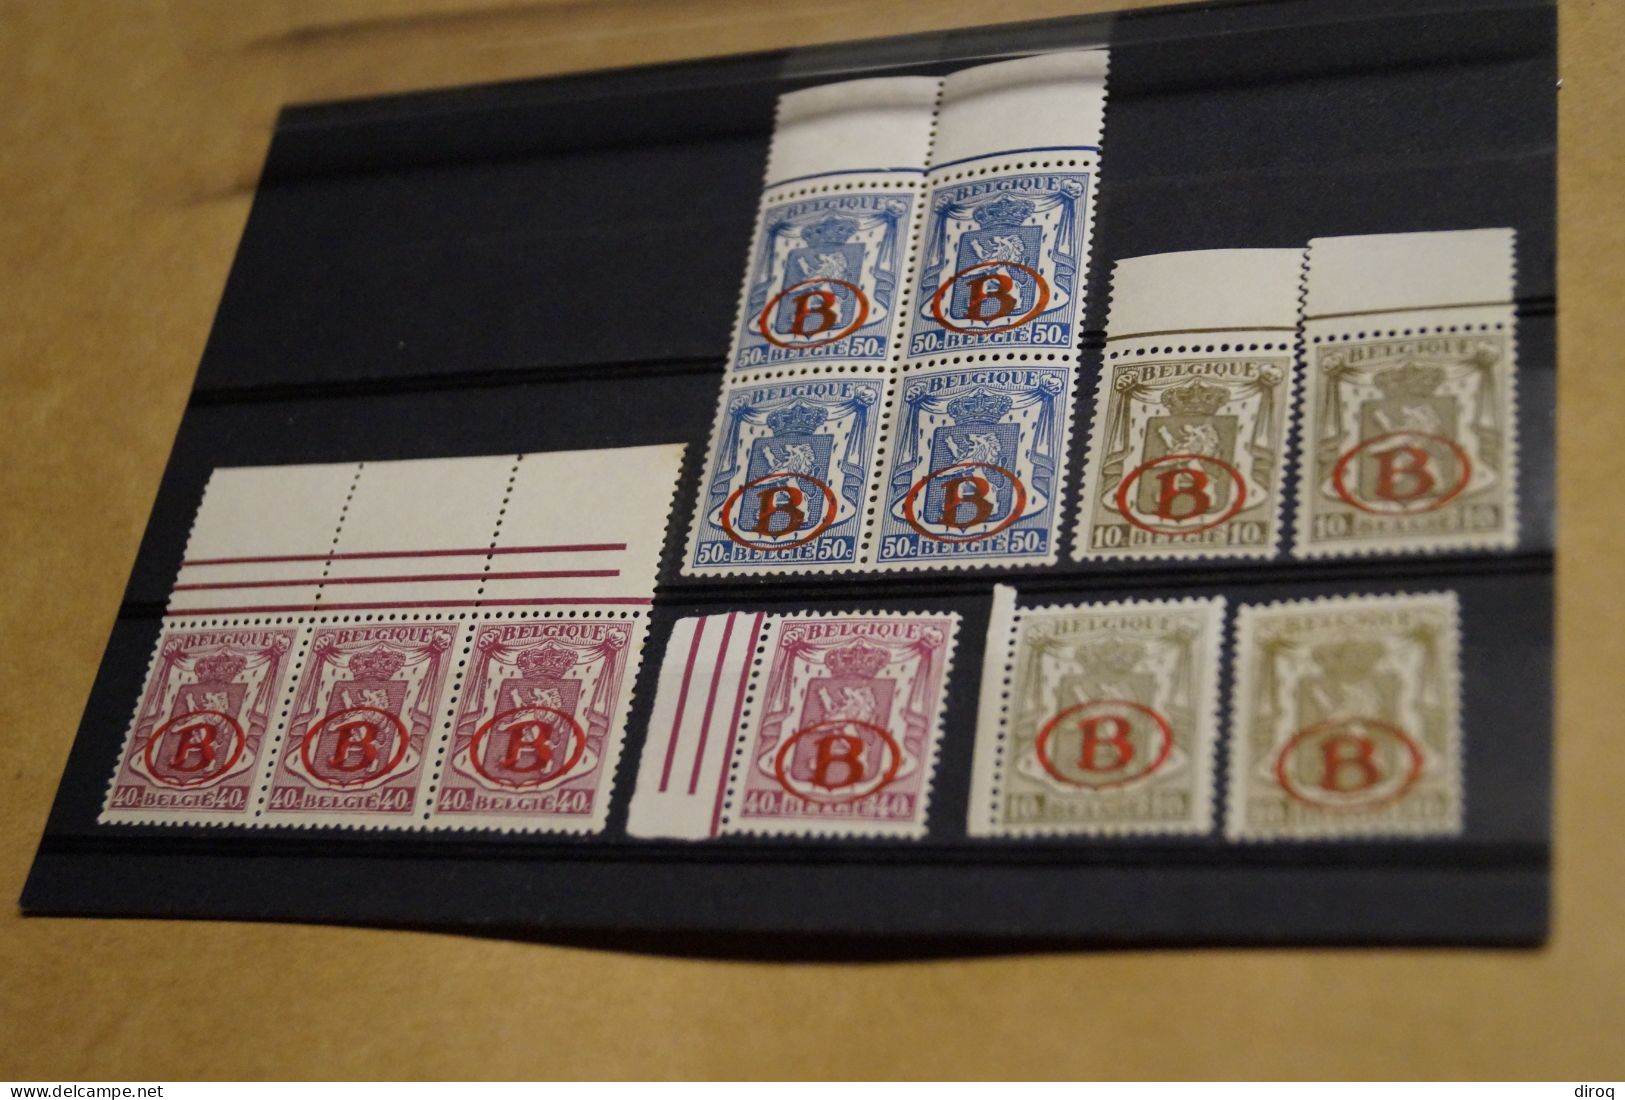 lot de 24 timbres,très bonne affaire,état strictement neuf,chemin de fer ,collection